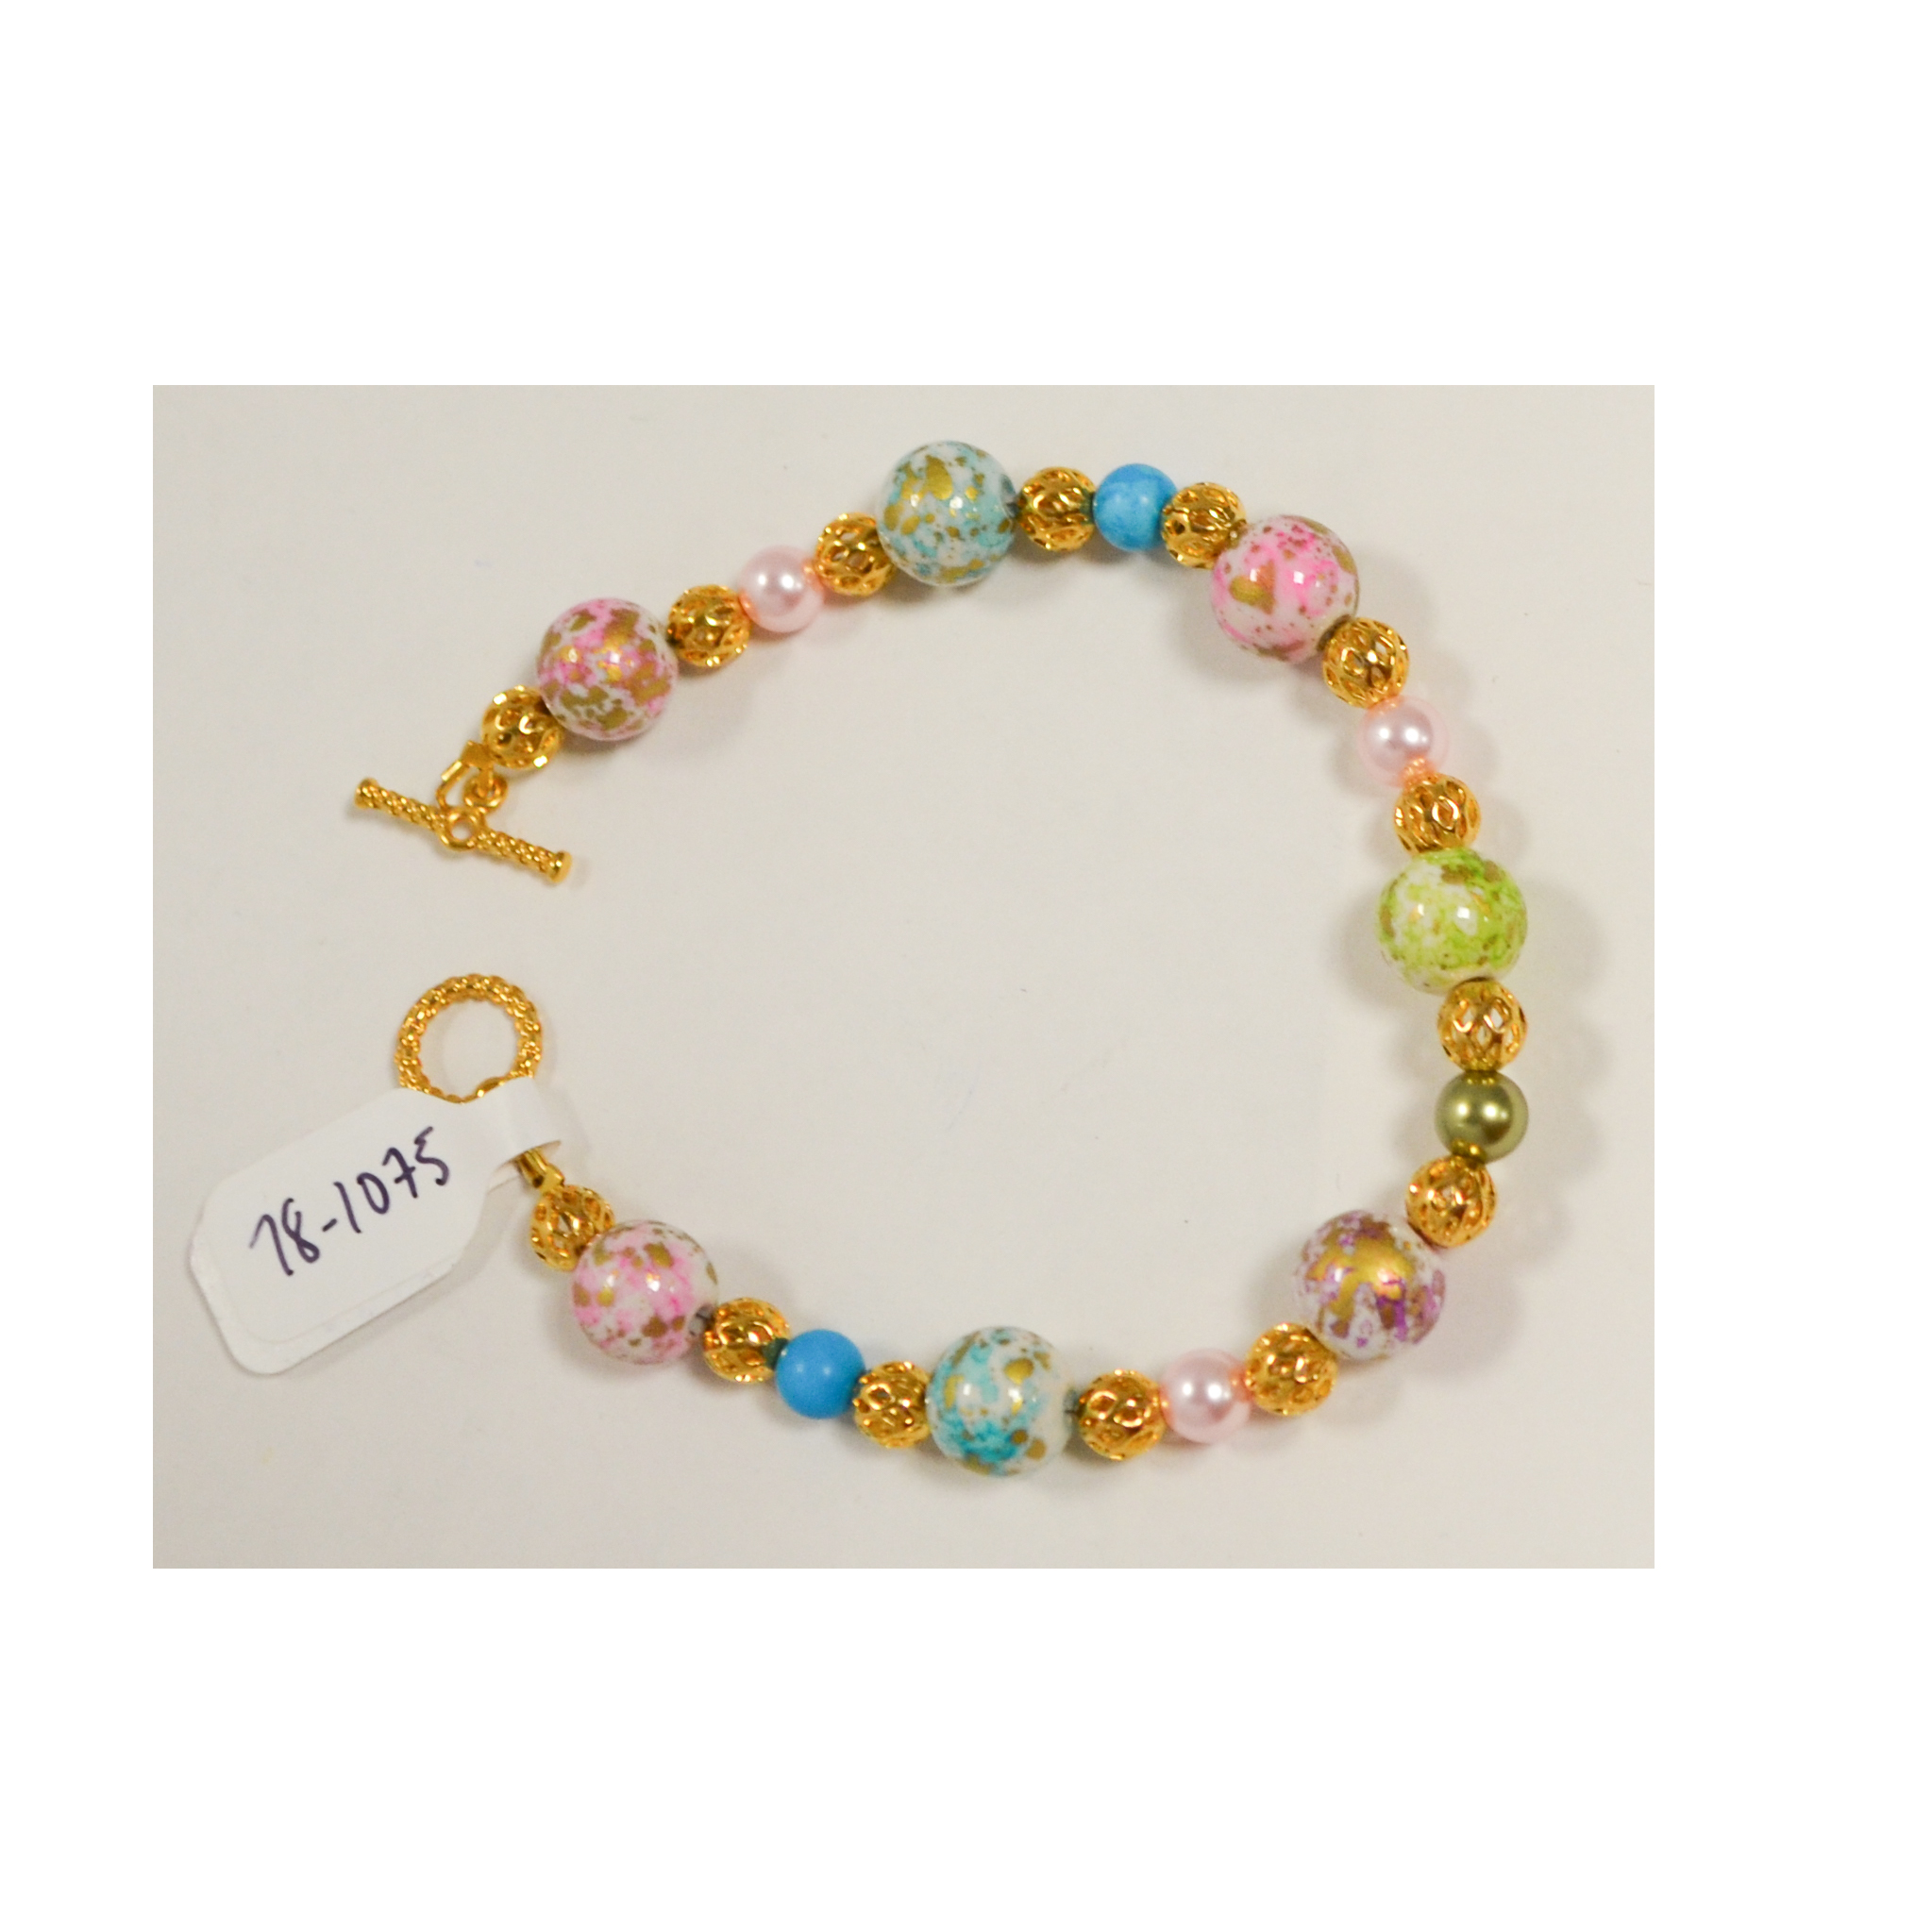 Cotton candy bracelet by Judy Phillips